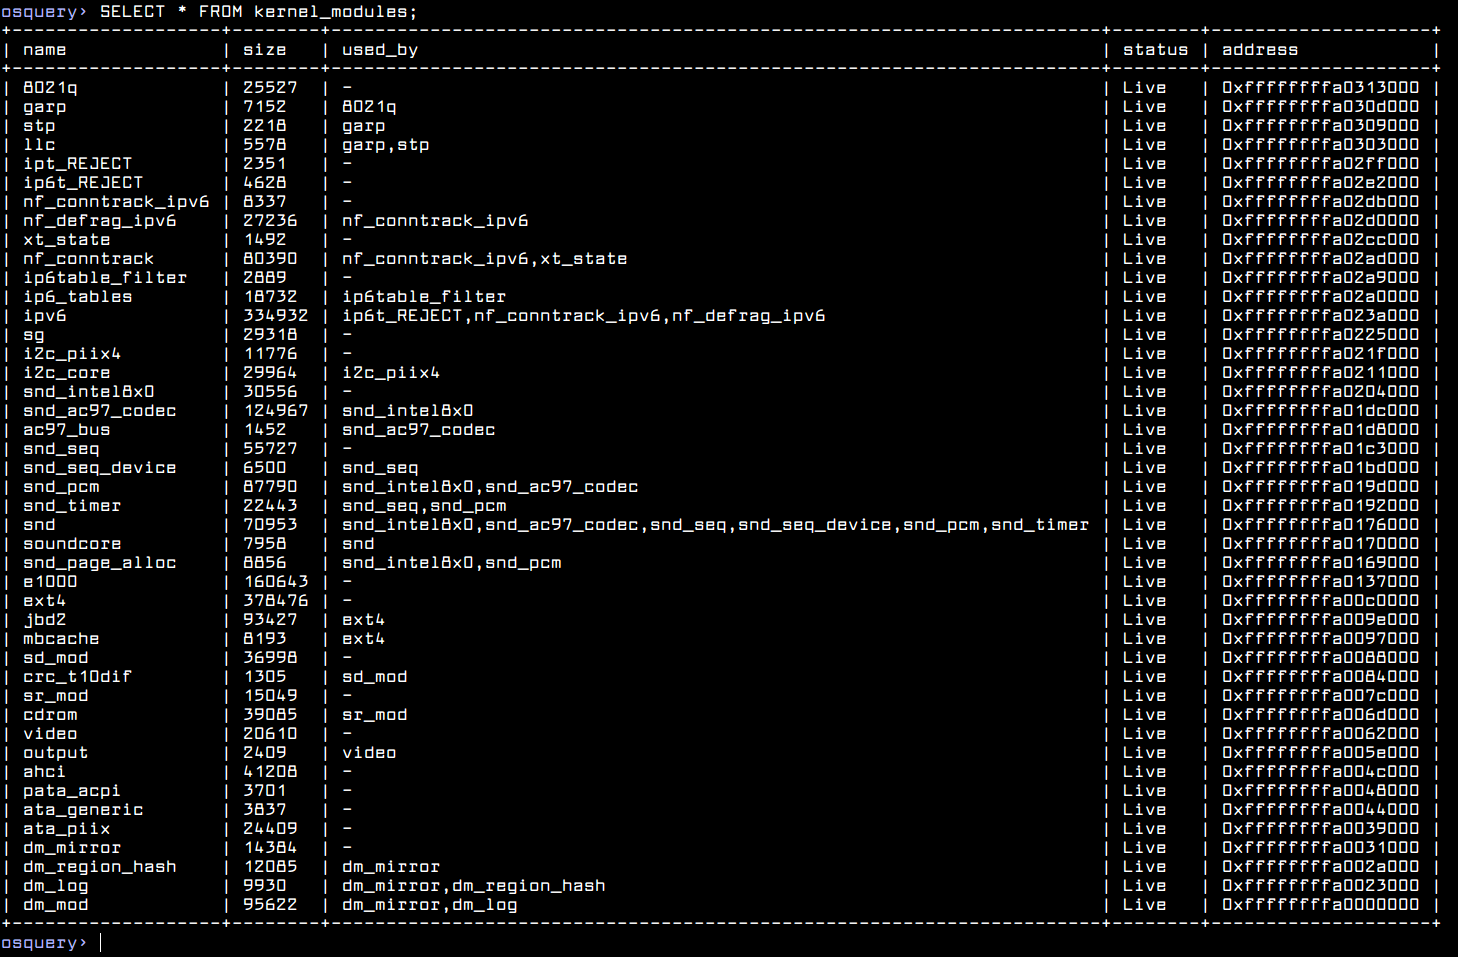  Lista de todos los módulos del kernel en Linux 